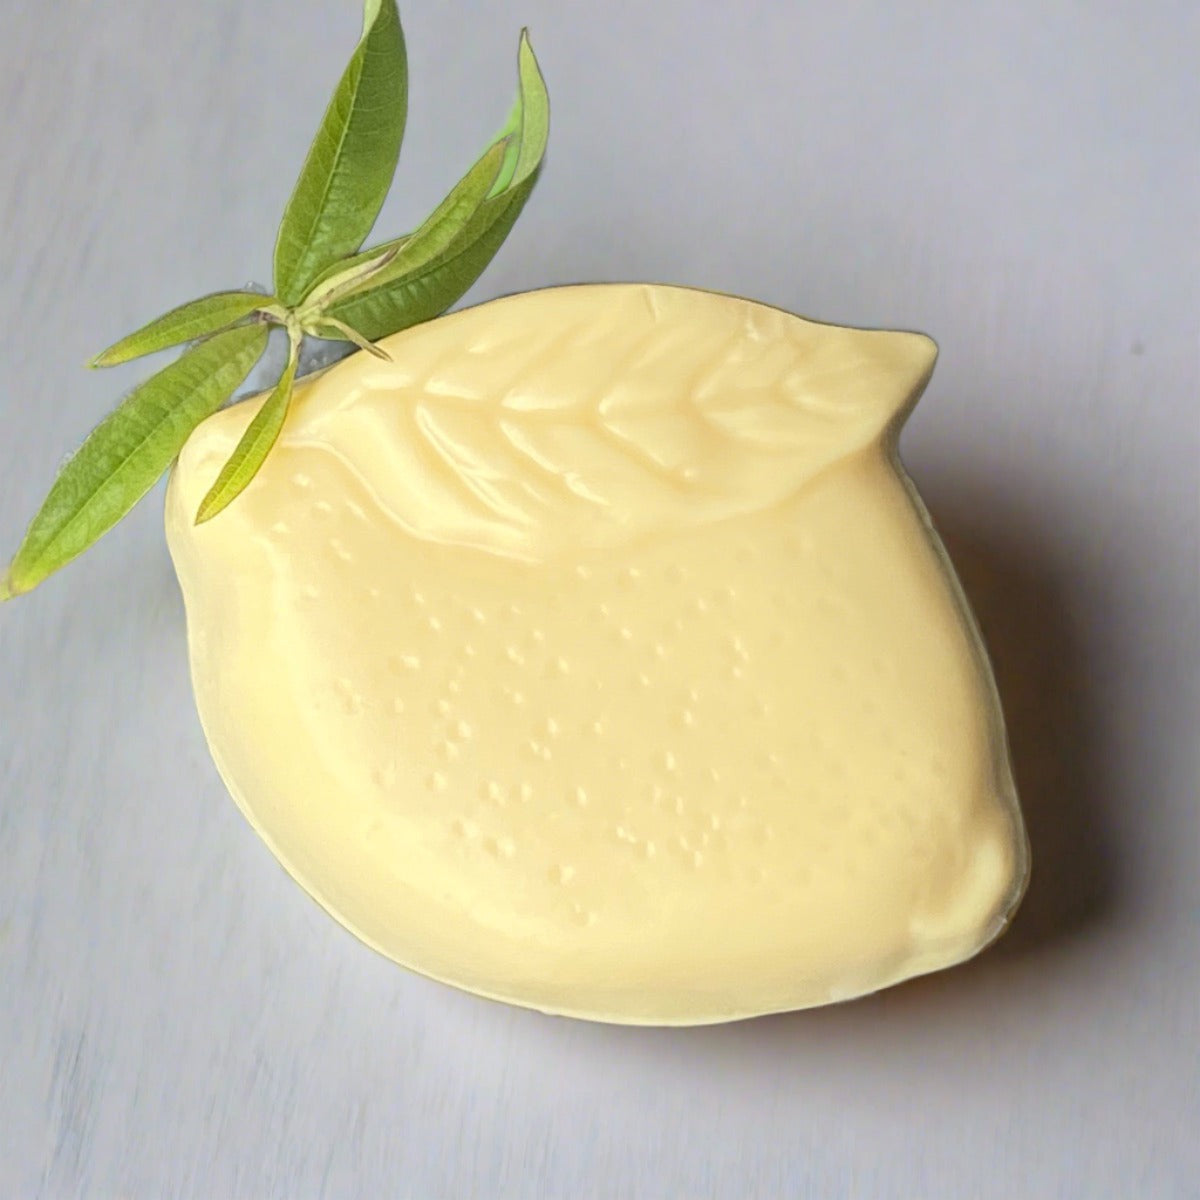 Lemon shaped bar of  lemon-scented antibacterial soap 